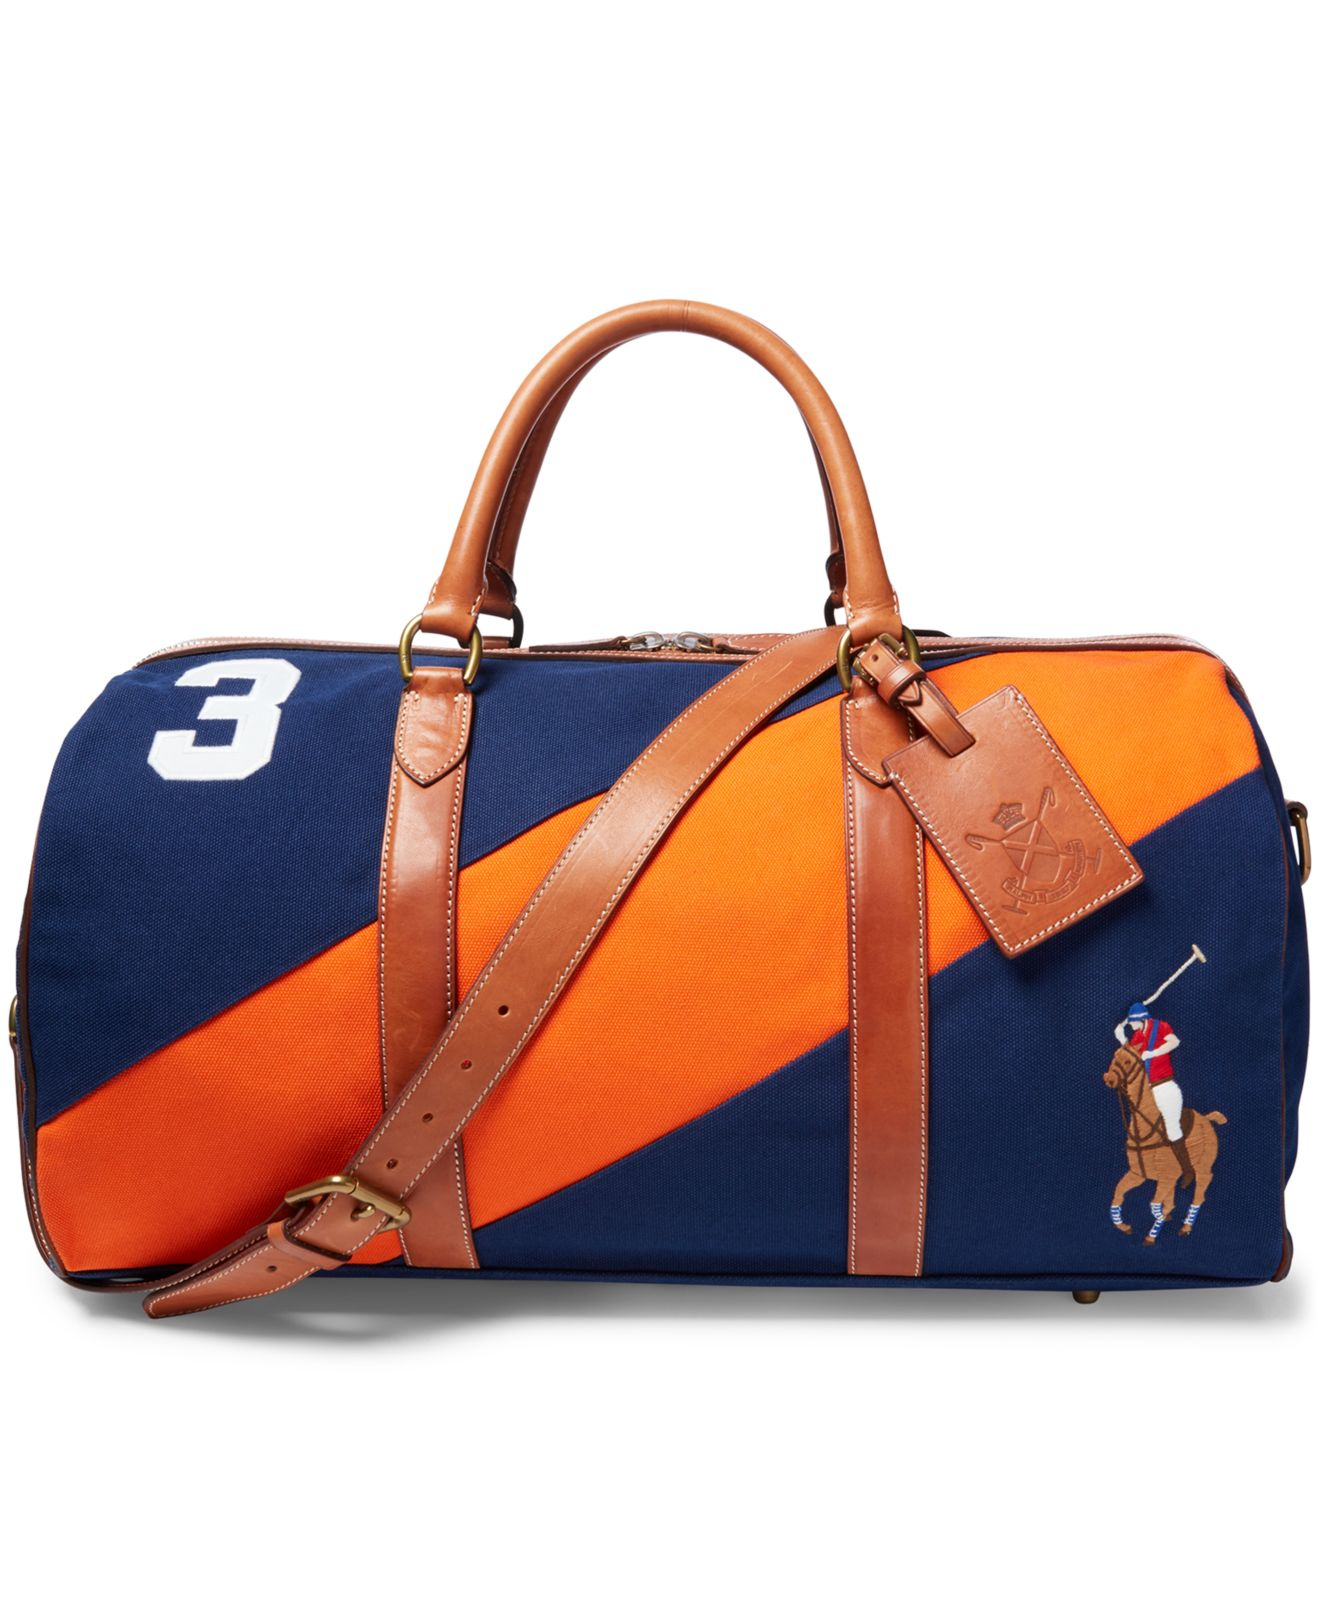 Ralph Lauren Polo Duffle Bag Sale, SAVE 58% - eagleflair.com